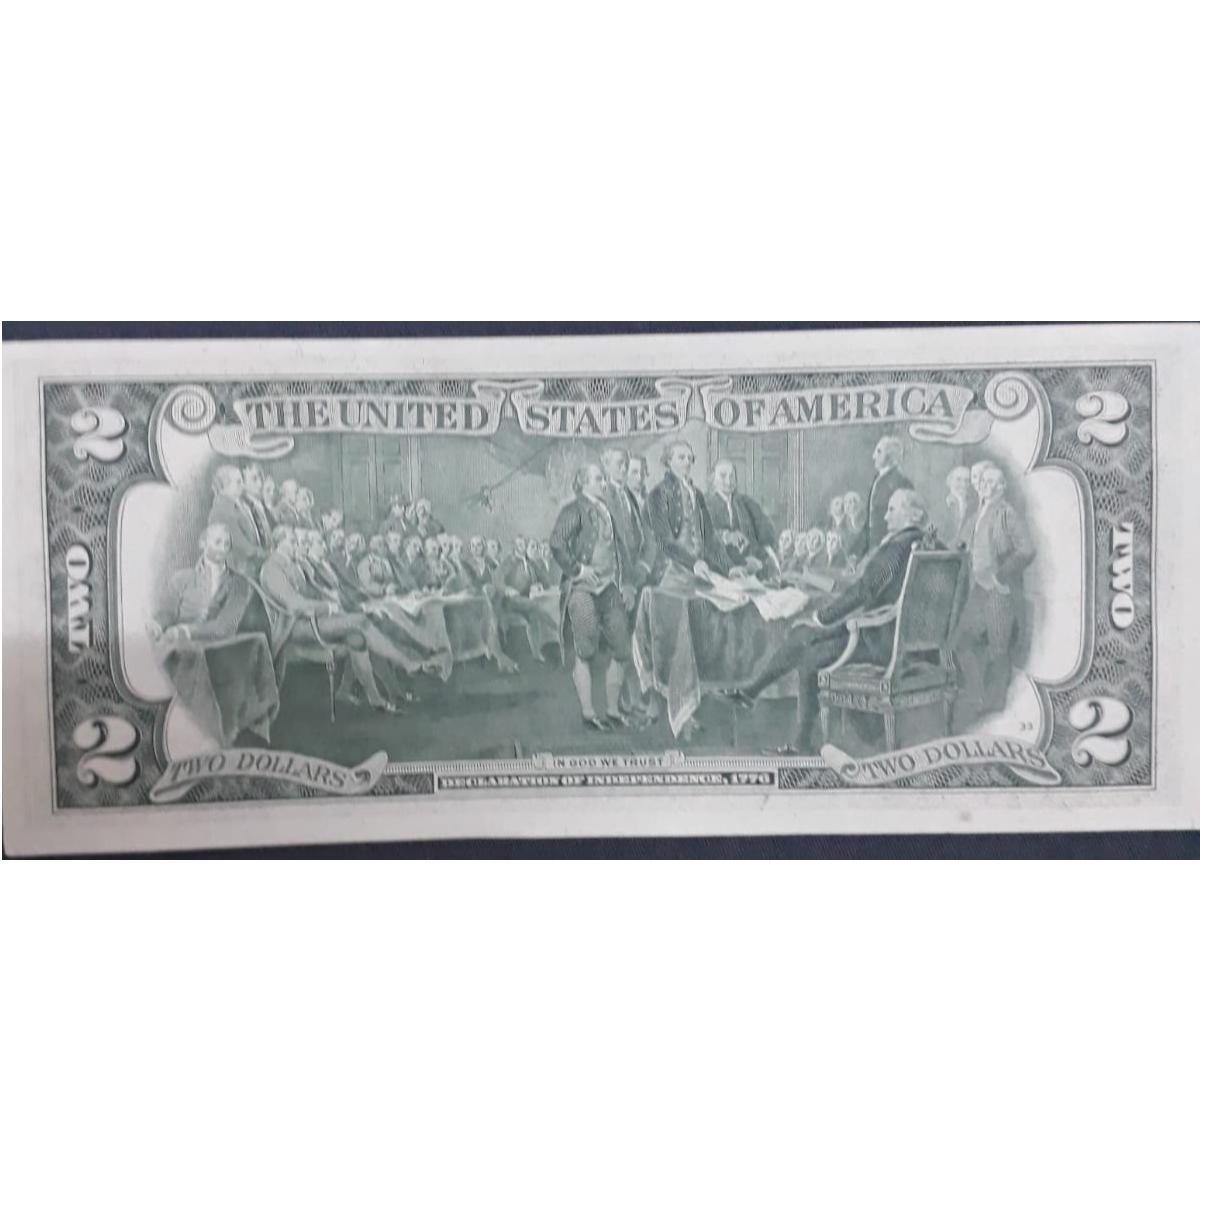 1976 A Serili Yeşil Mühürlü Amerikan 2 Doları Çil